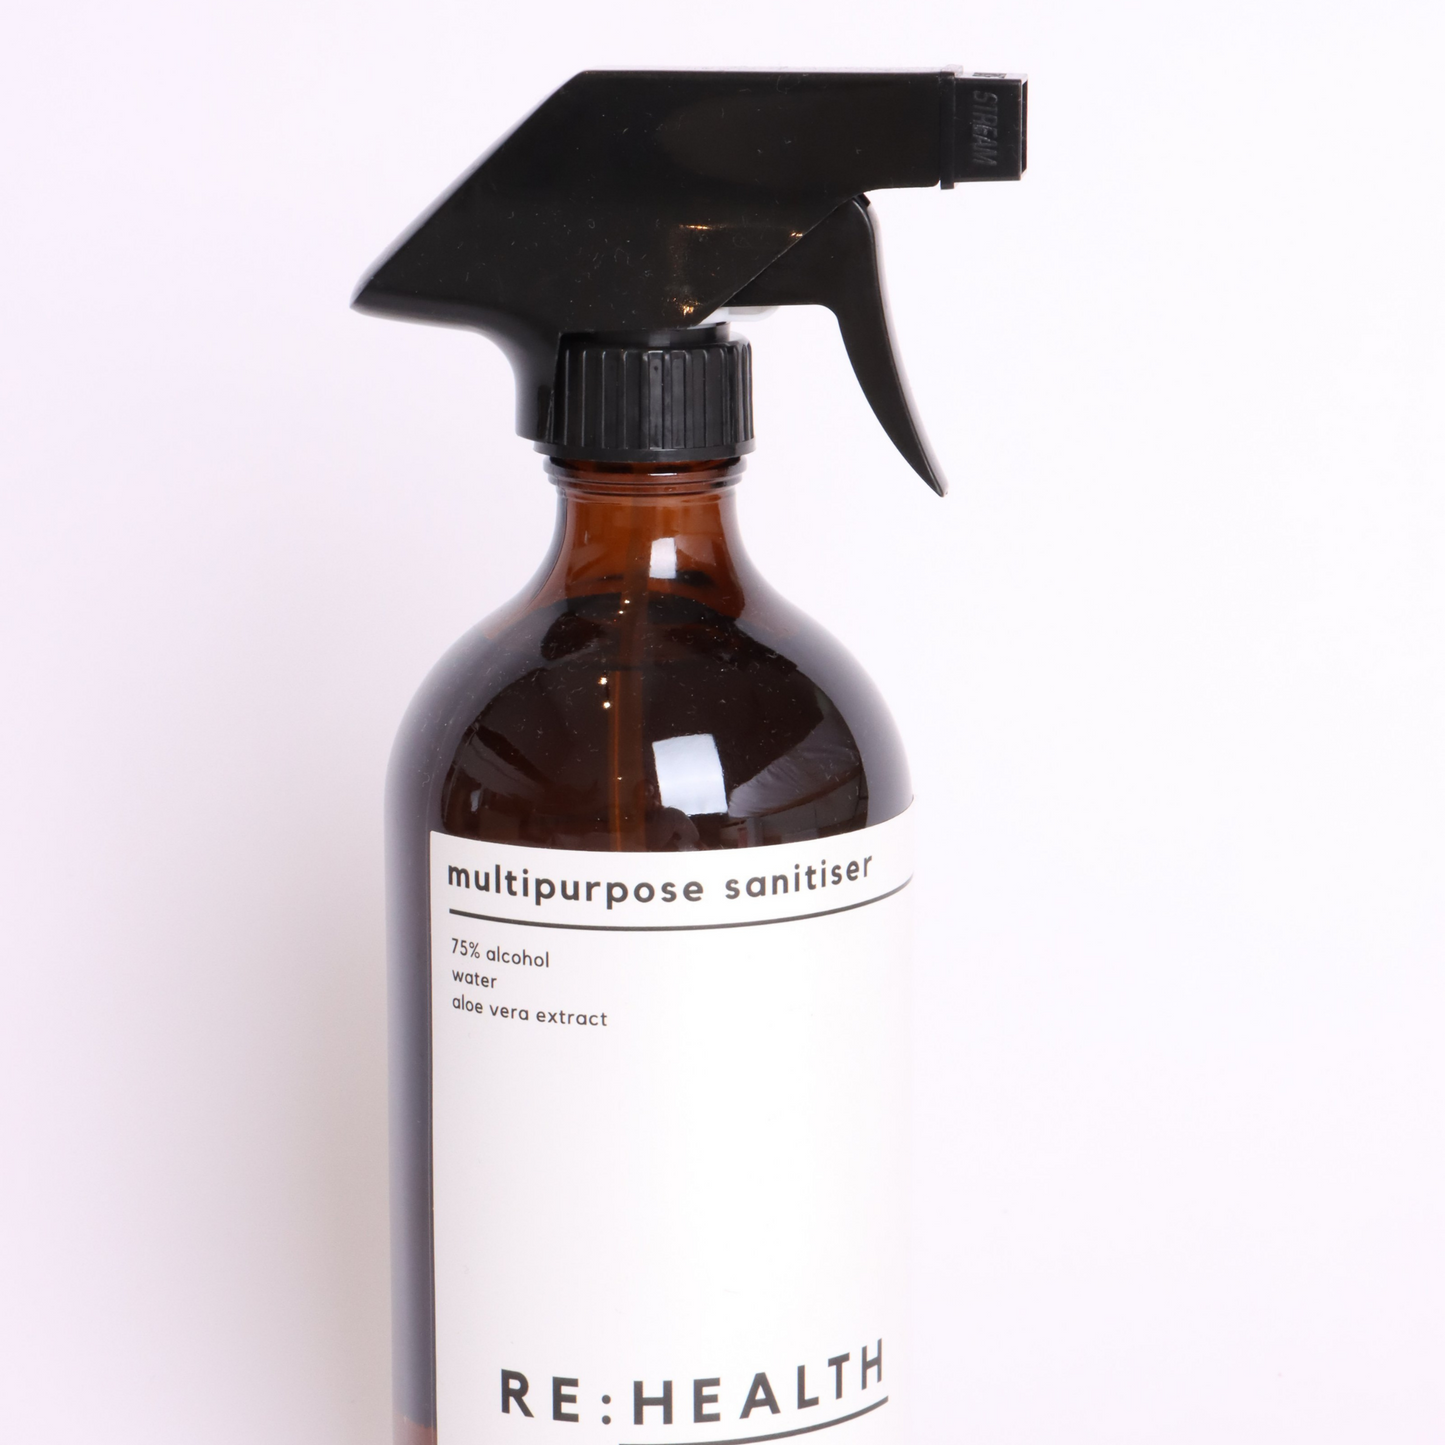 Refillable Multipurpose Sanitiser - RE:HEALTH